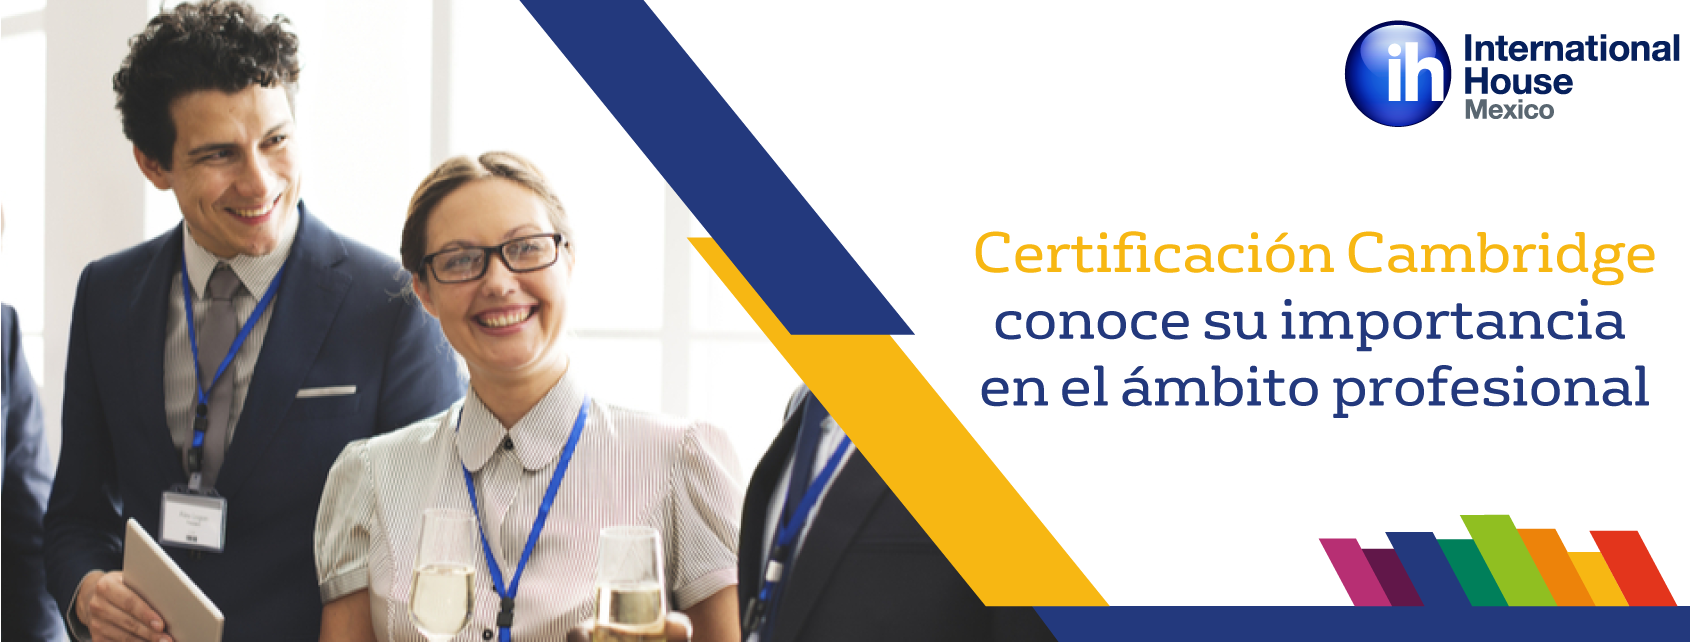 Certificación Cambridge: Conoce su importancia en el ámbito profesional